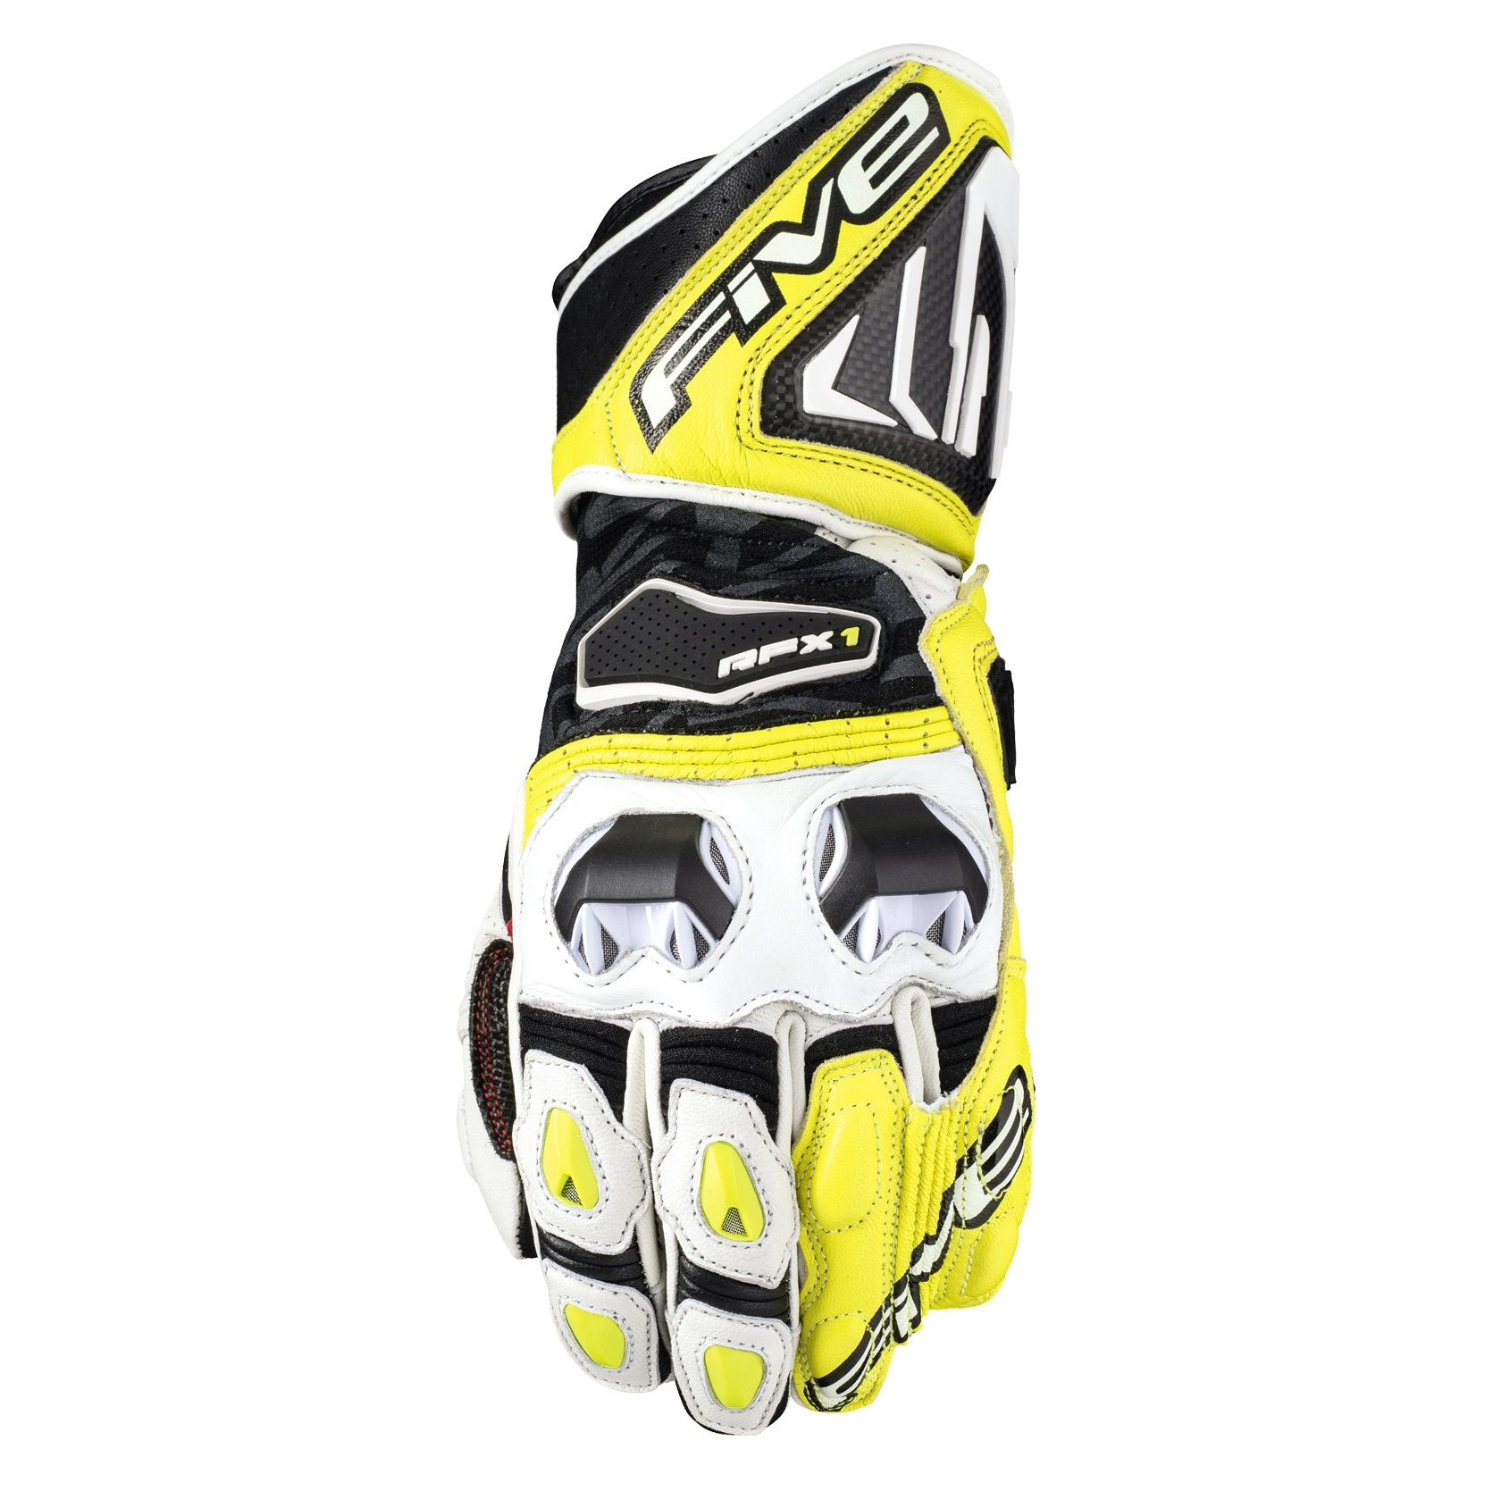 Five RFX1 Gloves White Yellow Size L